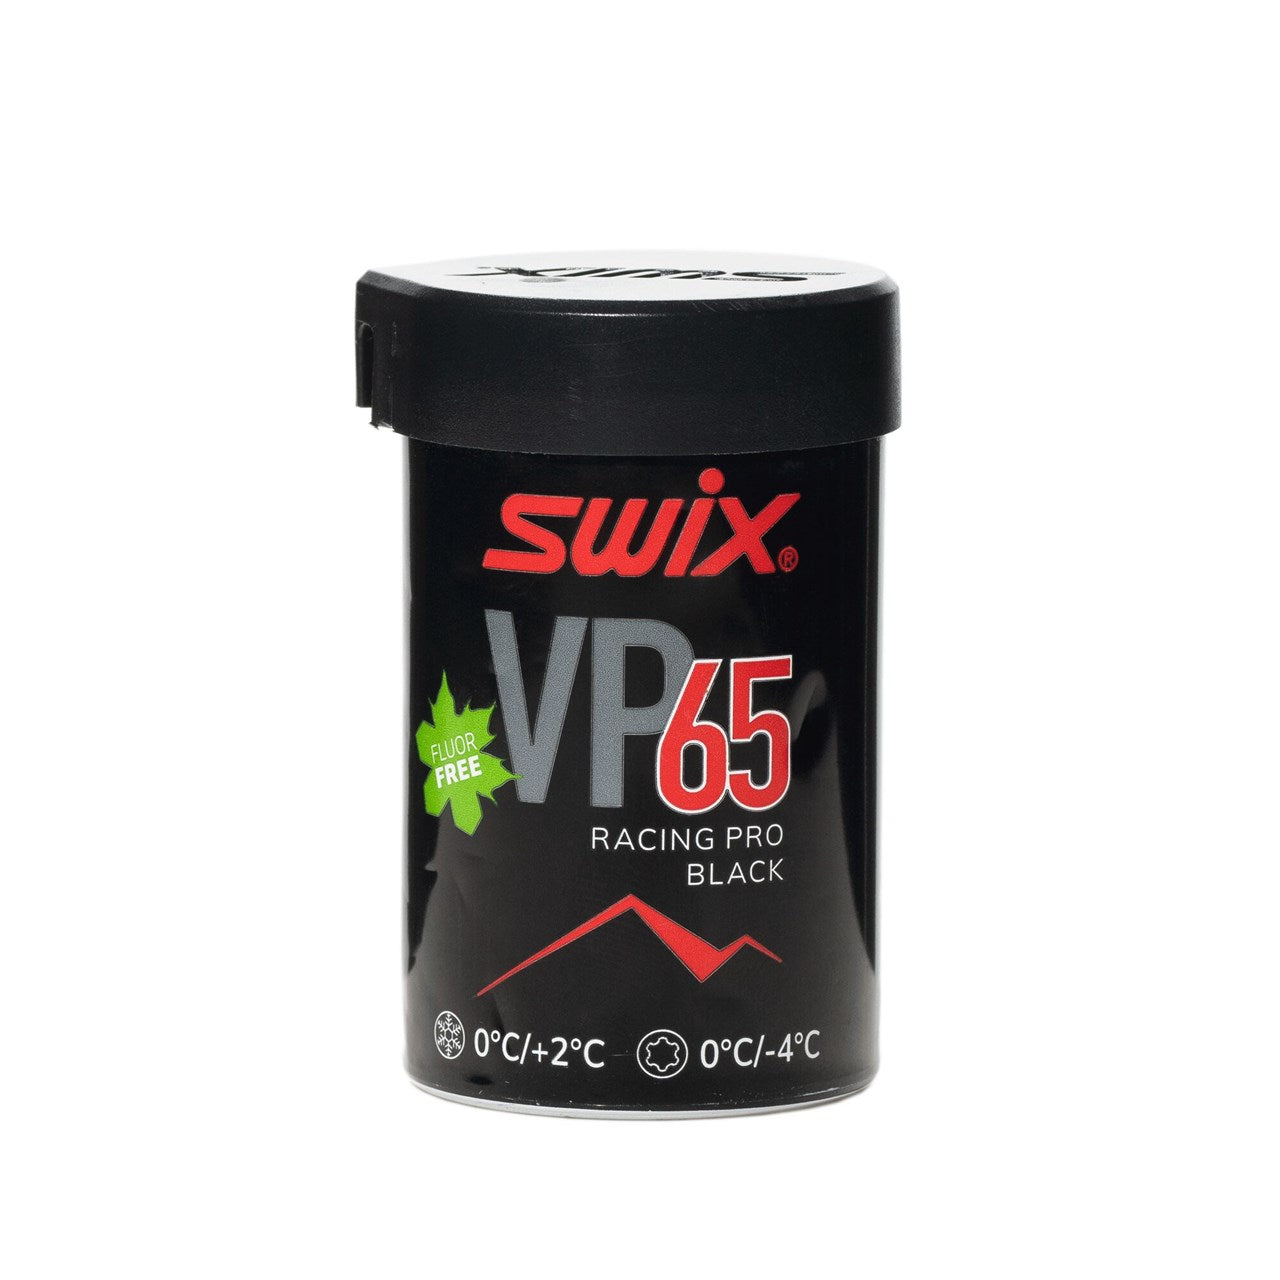 Billede af Swix VP65 Pro Black/Red 0âºC/+2âºC (43 g)